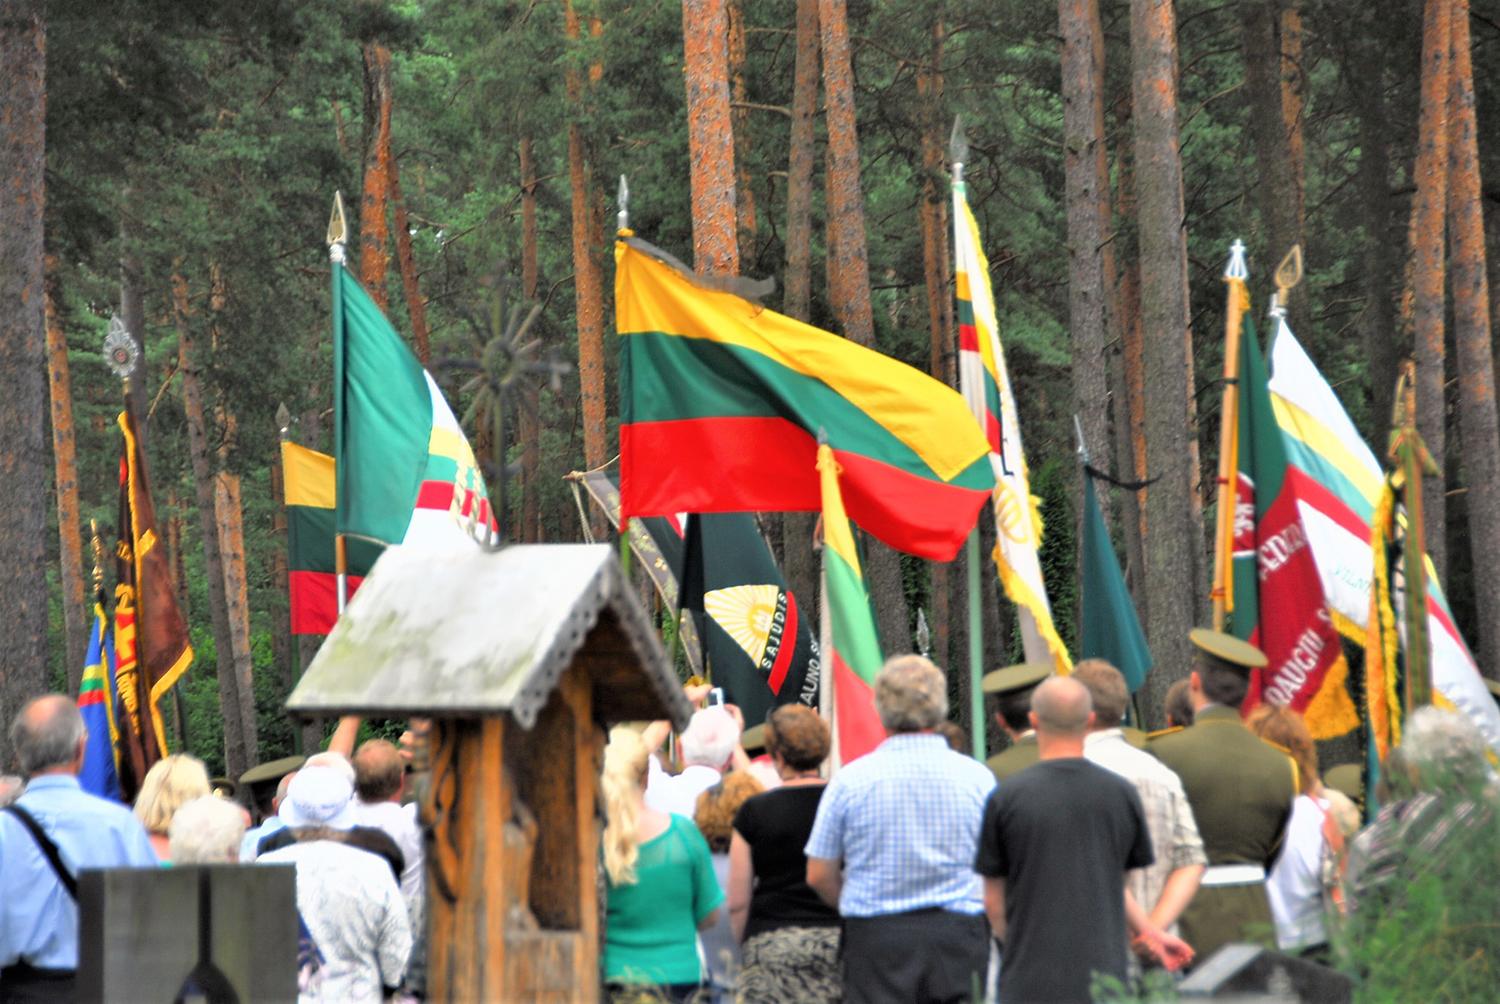 Sąjūdžio jubiliejų mini drauge su Lietuva / Šį lapkritį minimas Sąjūdžio jubiliejus. Gedimino Nemunaičio nuotr.